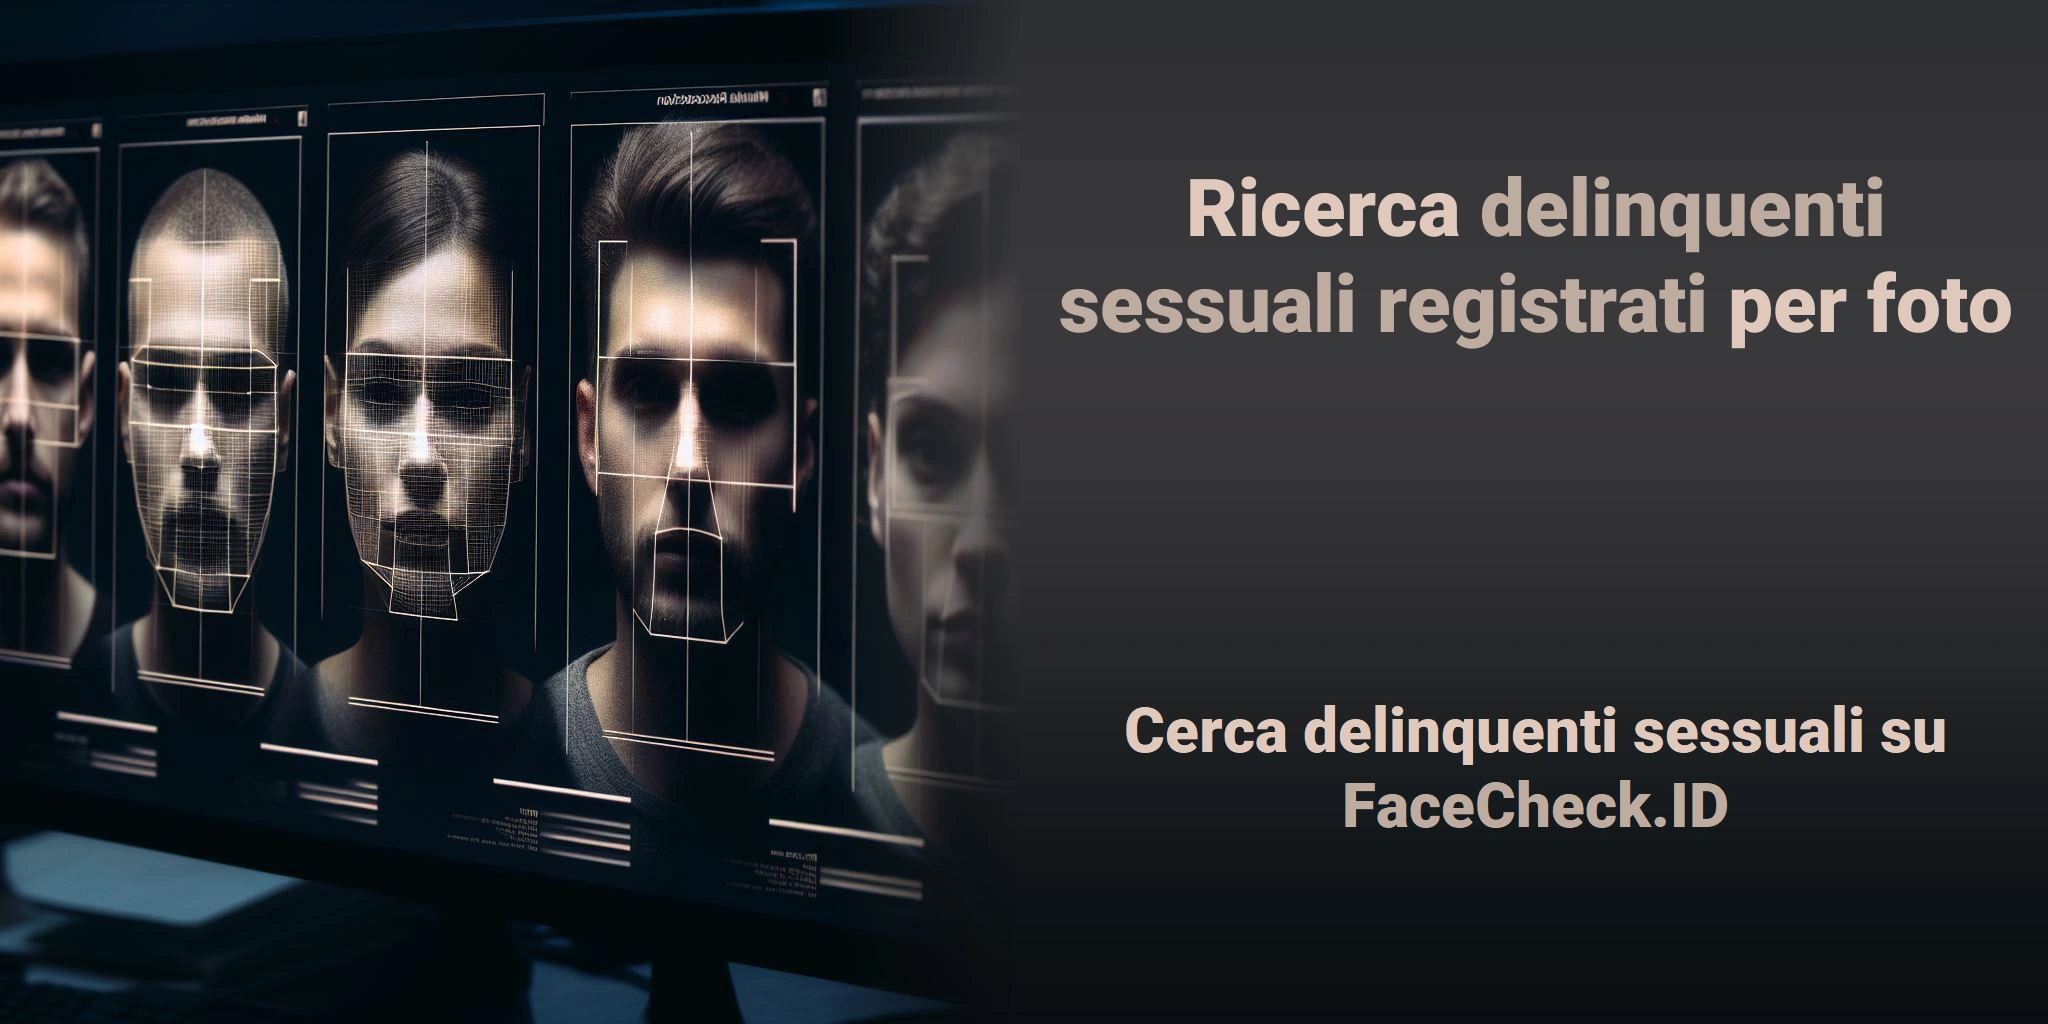 Ricerca delinquenti sessuali registrati per foto  Cerca delinquenti sessuali su FaceCheck.ID 